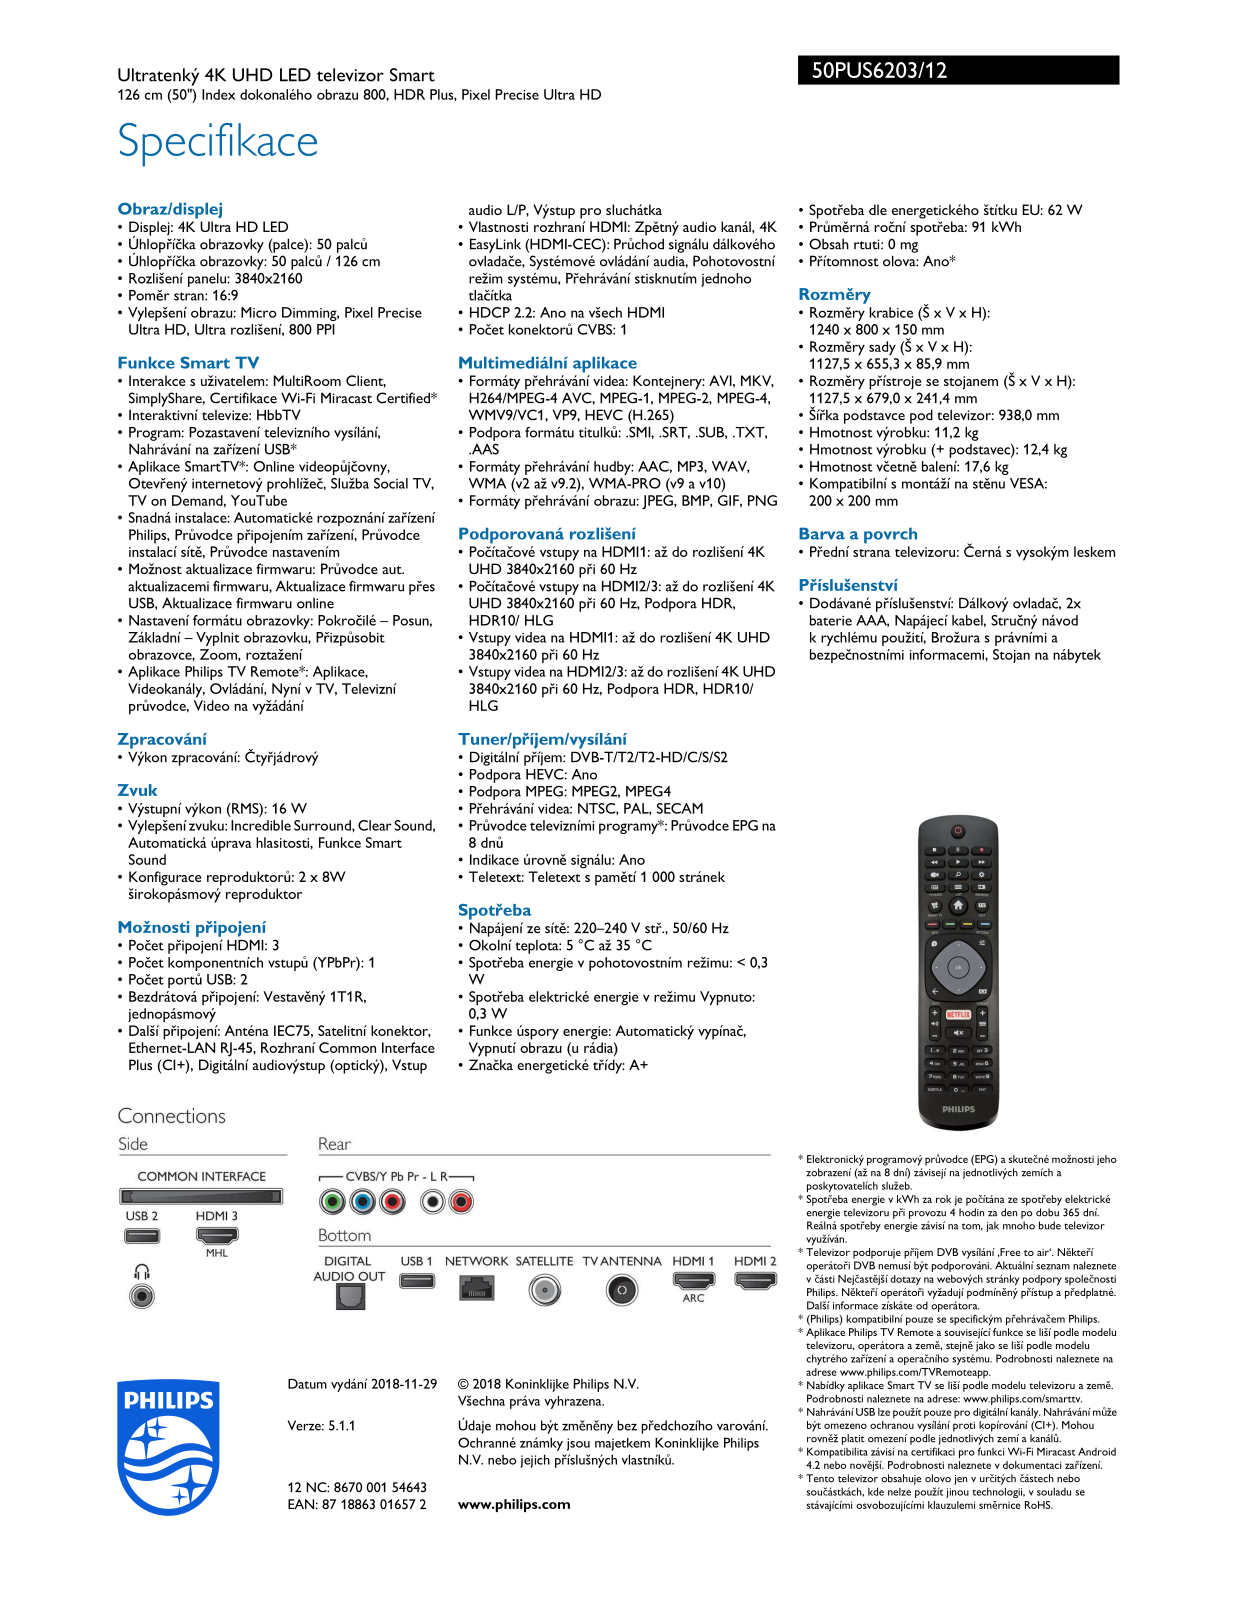 Philips 50PUS6203 User Manual